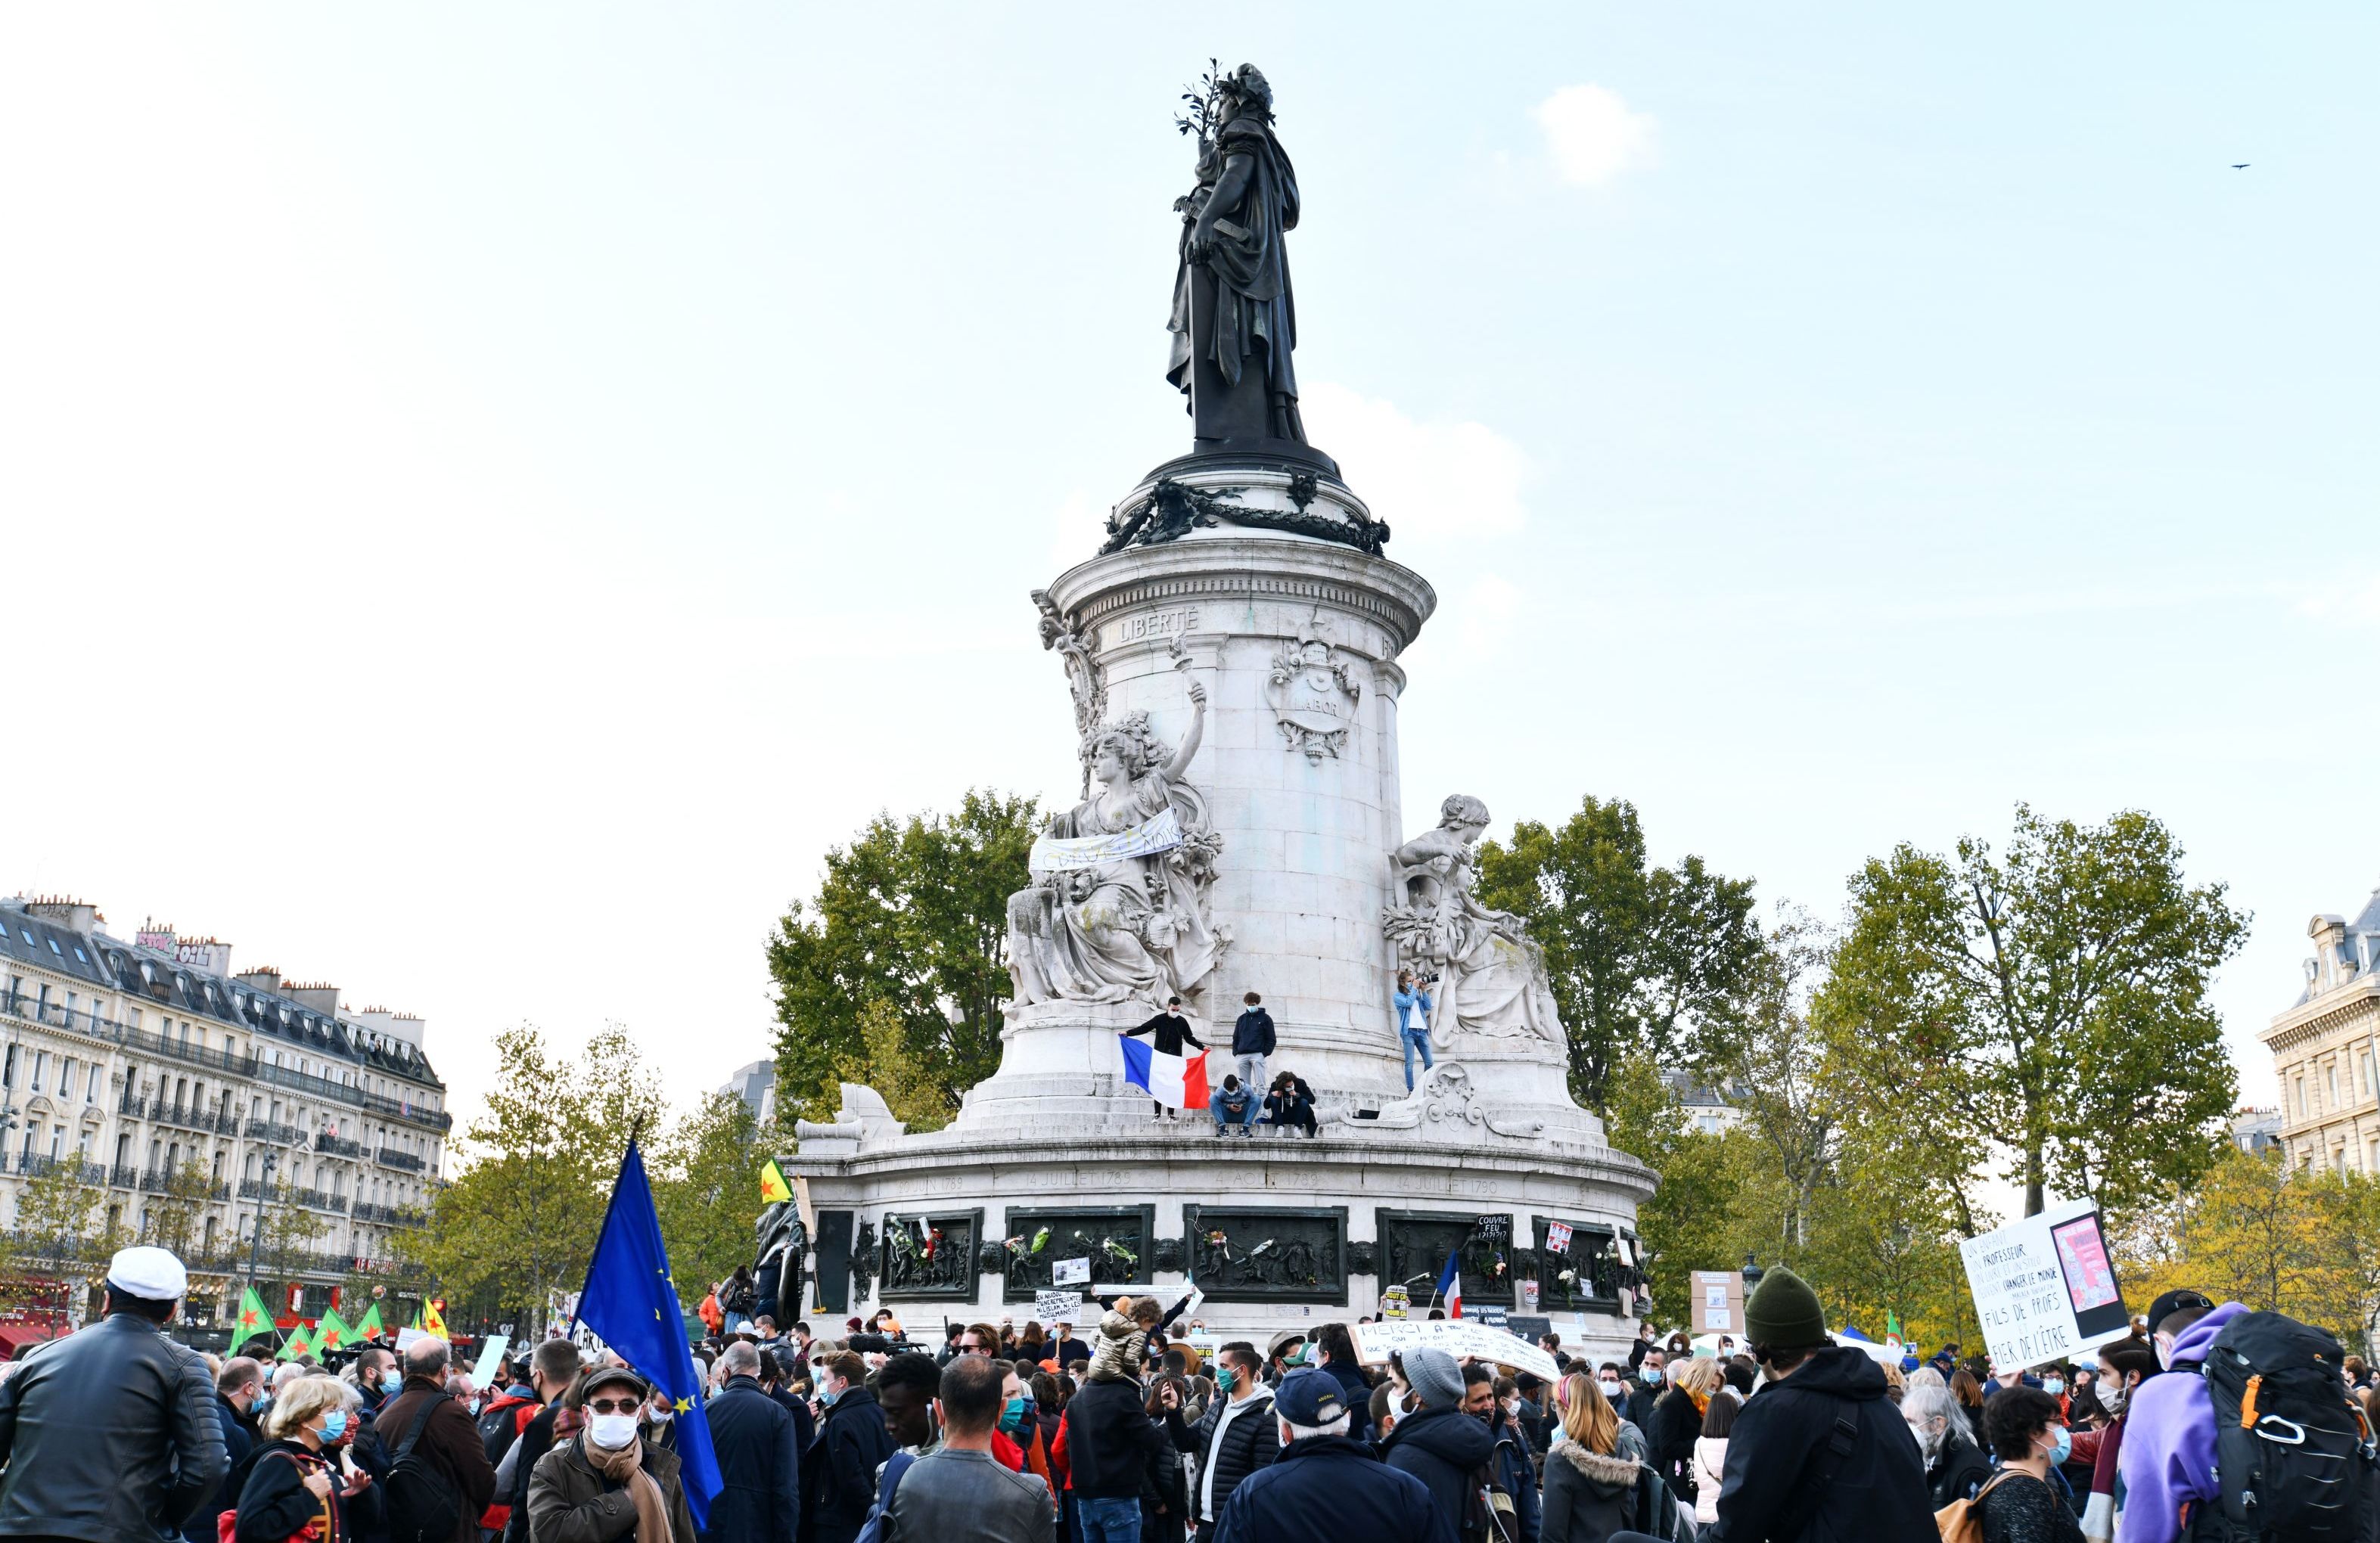 Участники акции памяти на площади Республики в Париже. Акция прошла под лозунгом "Свобода слова, свобода преподавания"